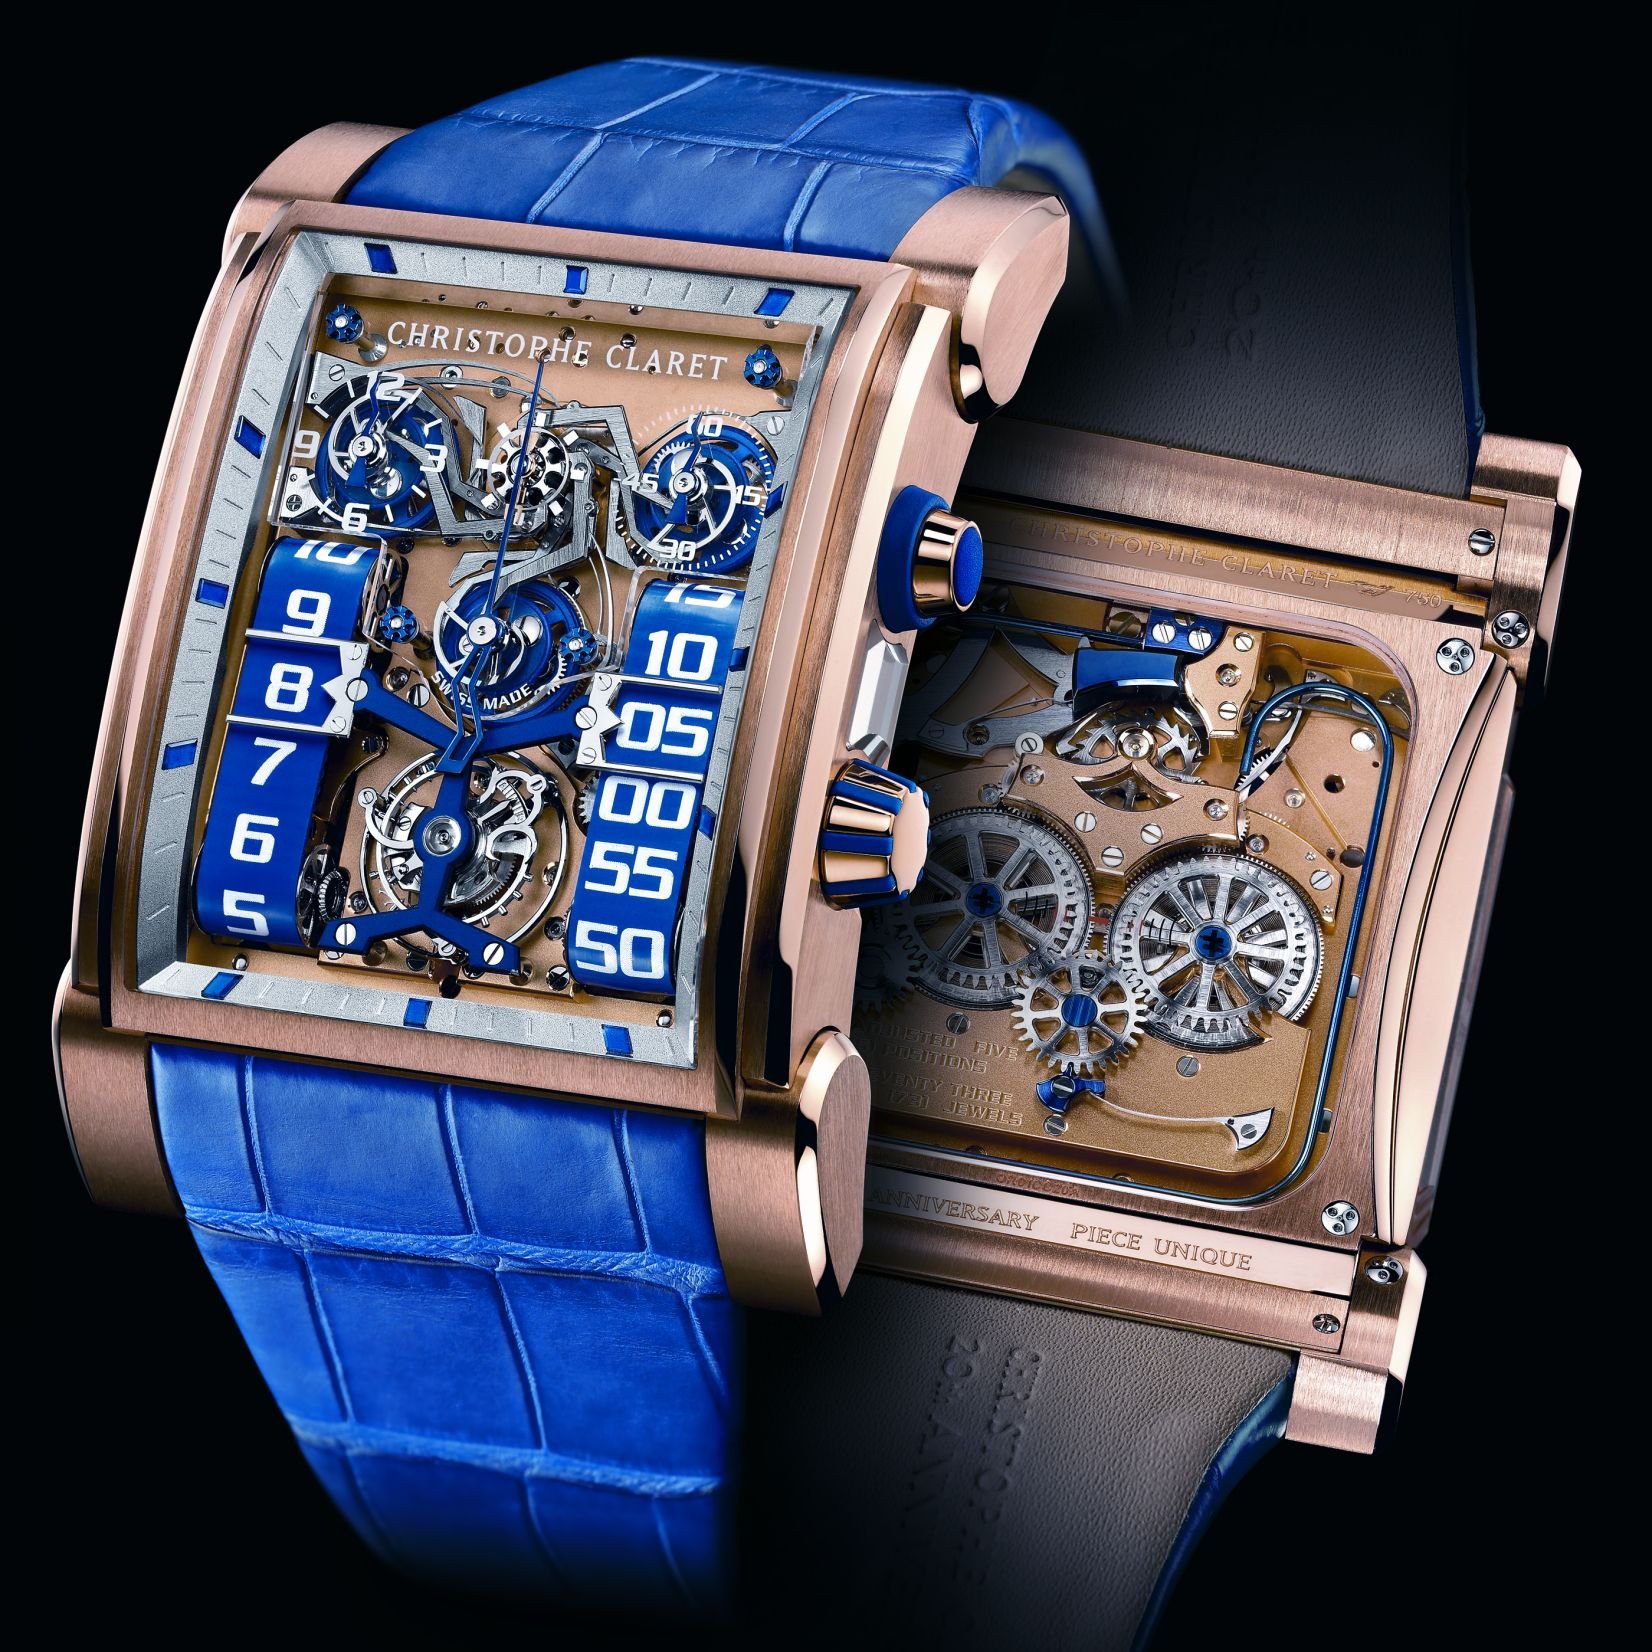 Час сы. Christophe Claret часы. Необычные наручные часы. Необычные часы наручные мужские. Эксклюзивные мужские часы.